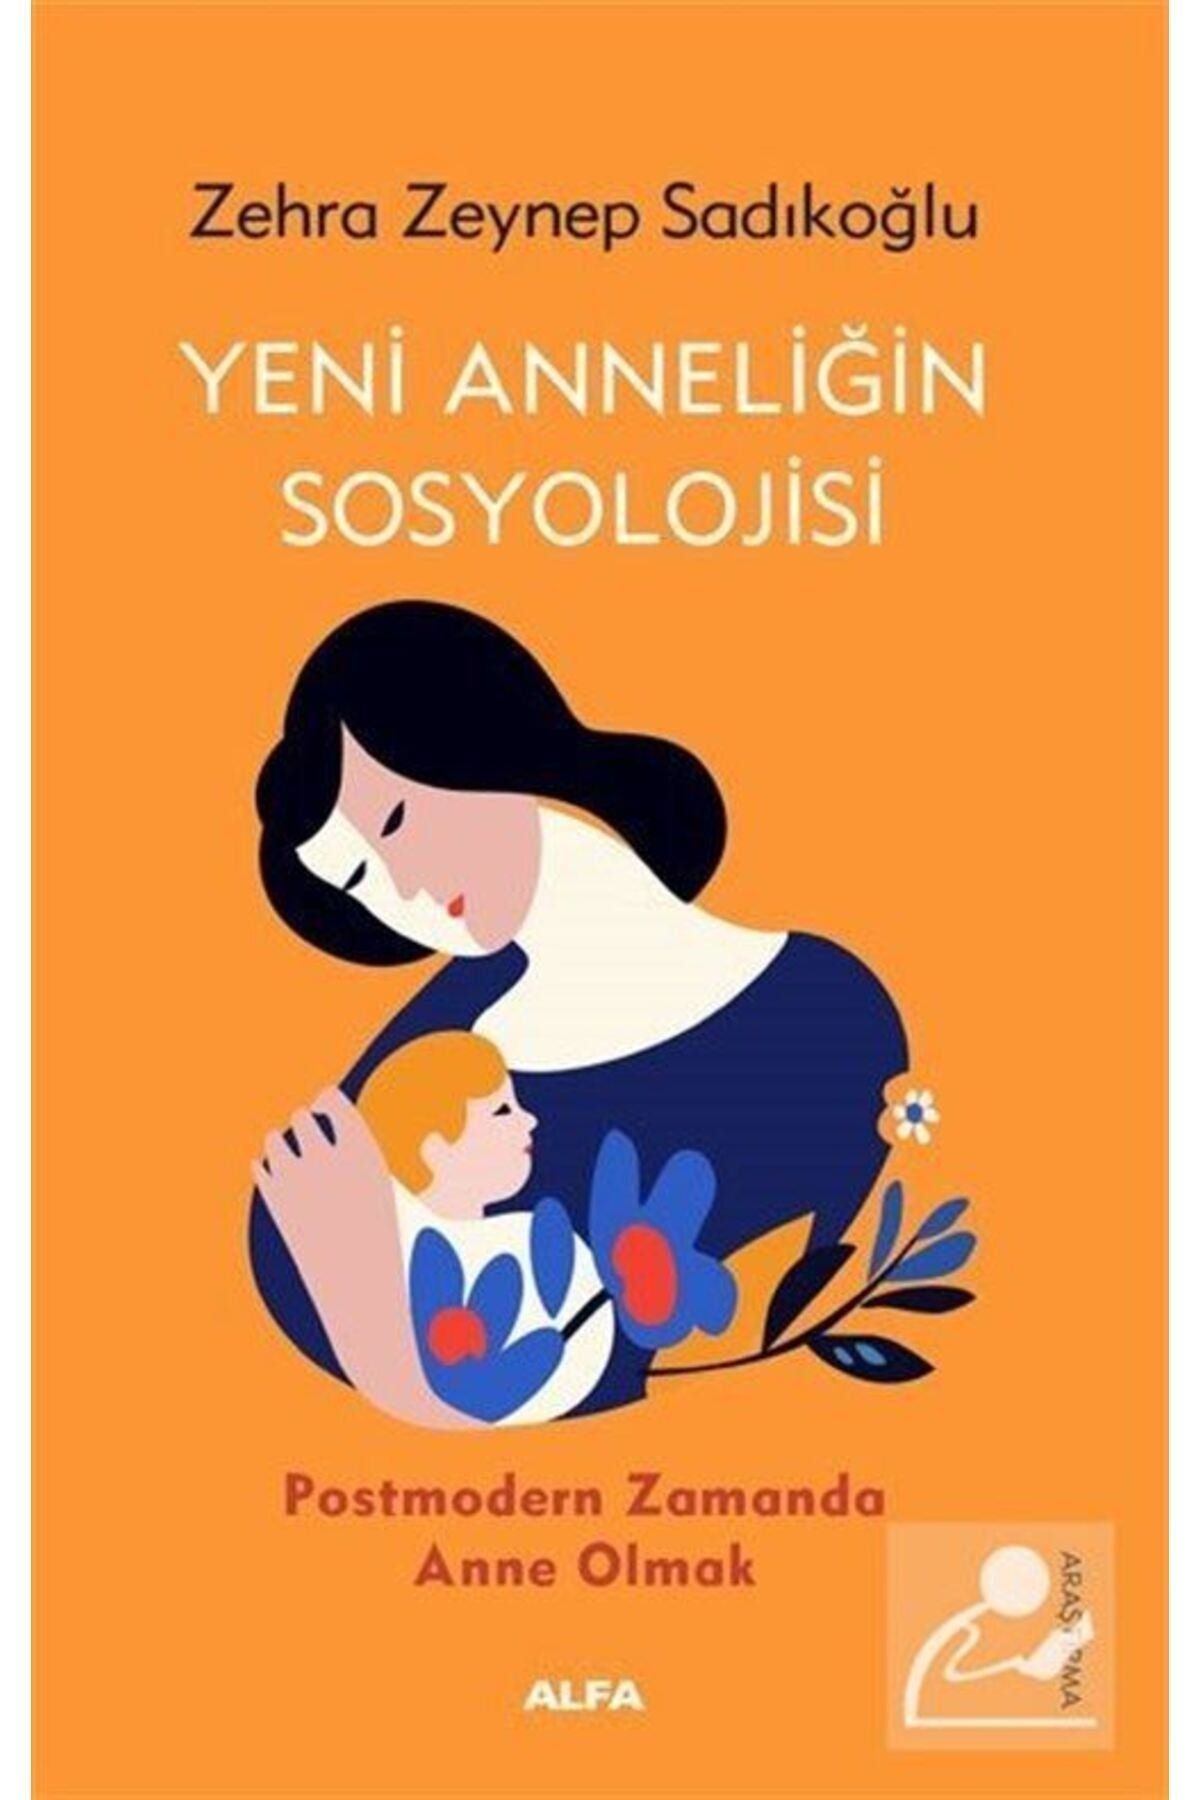 Alfa Yayınları Yeni Anneliğin Sosyolojisi & Postmodern Zamanda Anne Olmak